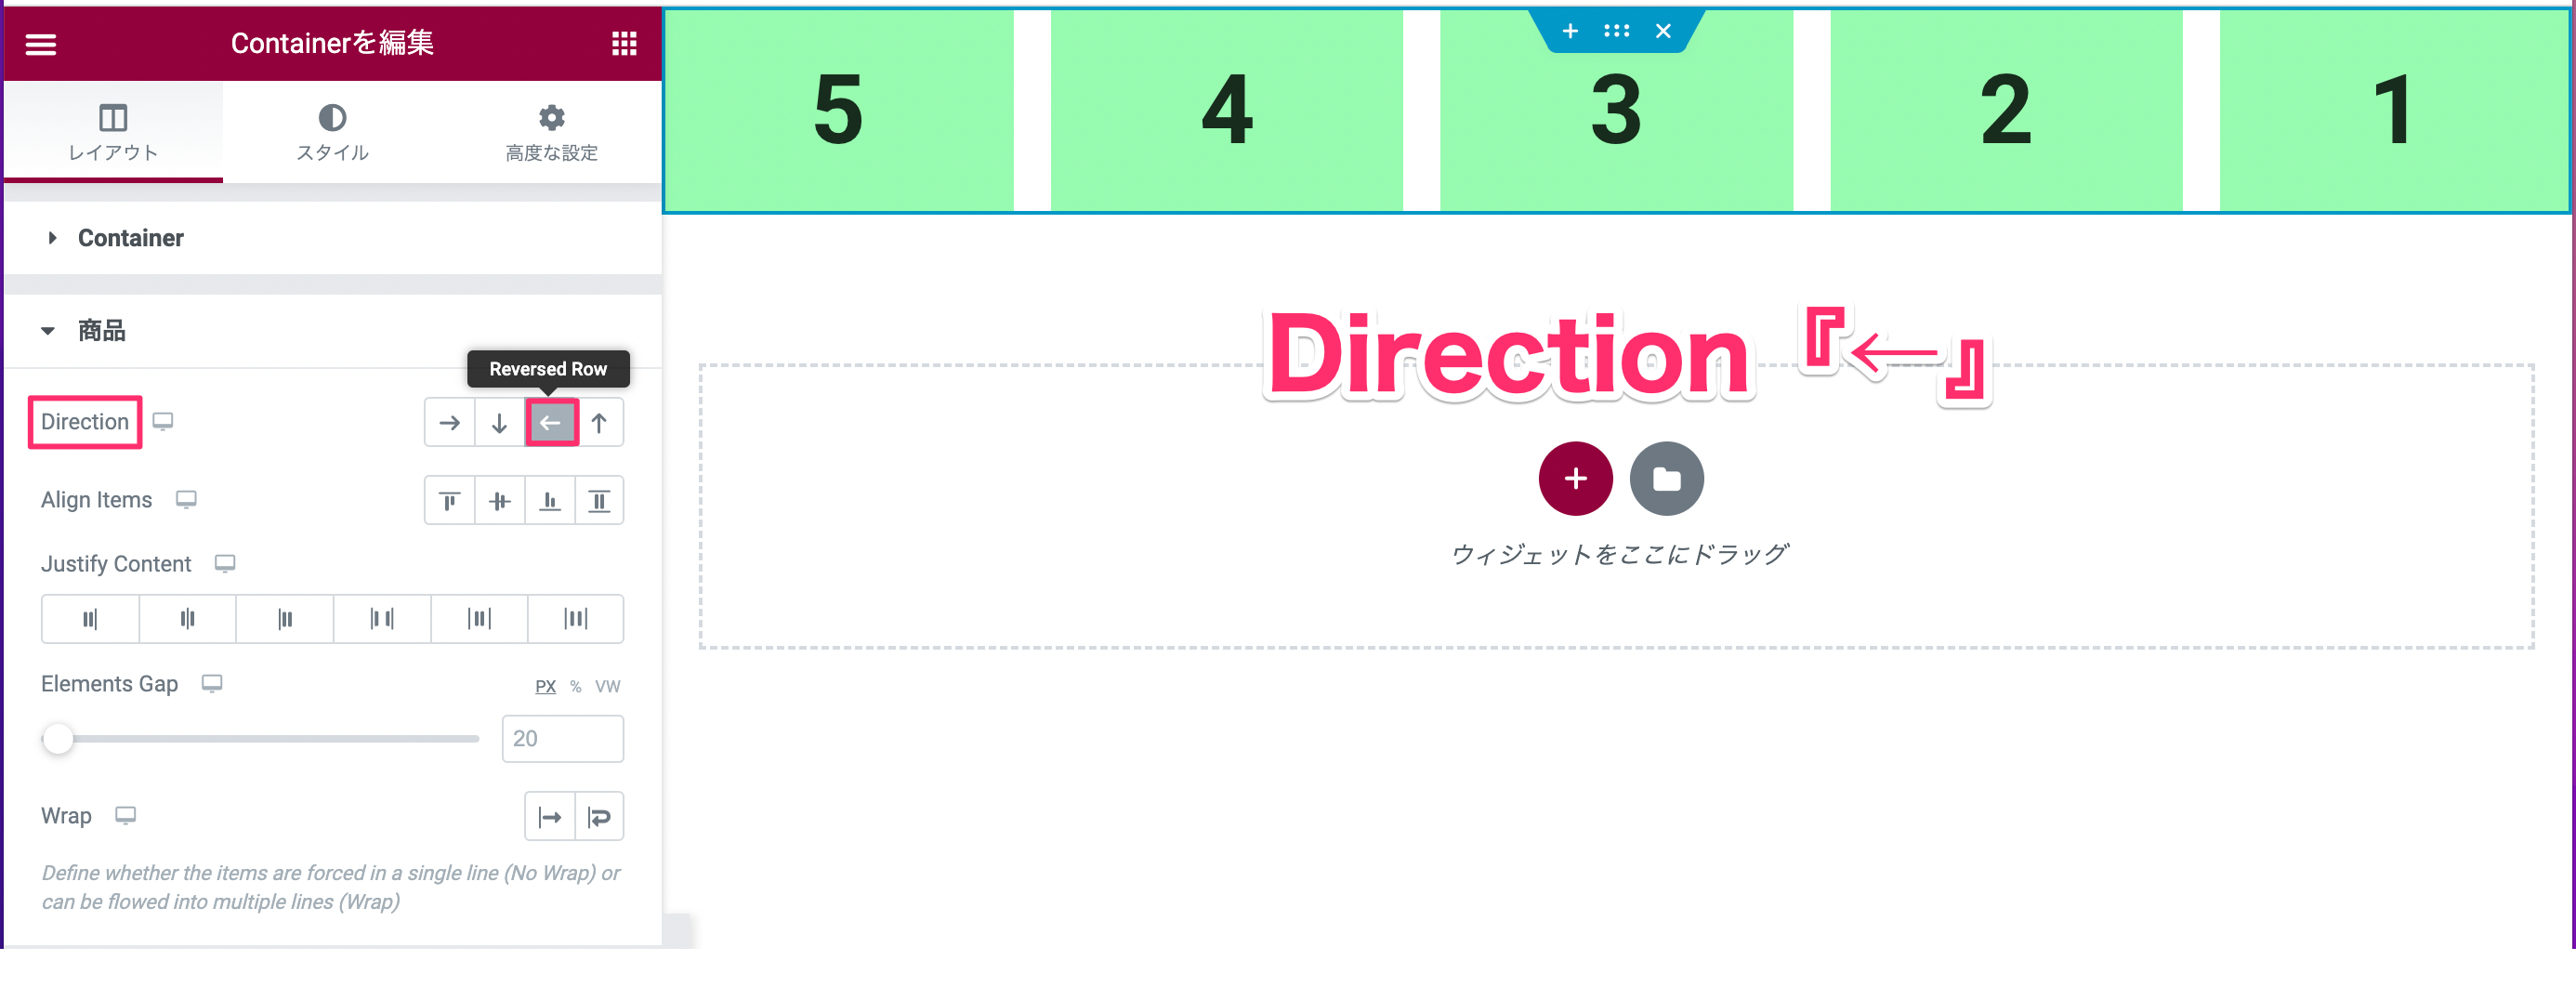 『Direction』で『←』を選択したときの表示画面（右から左へ配置される）